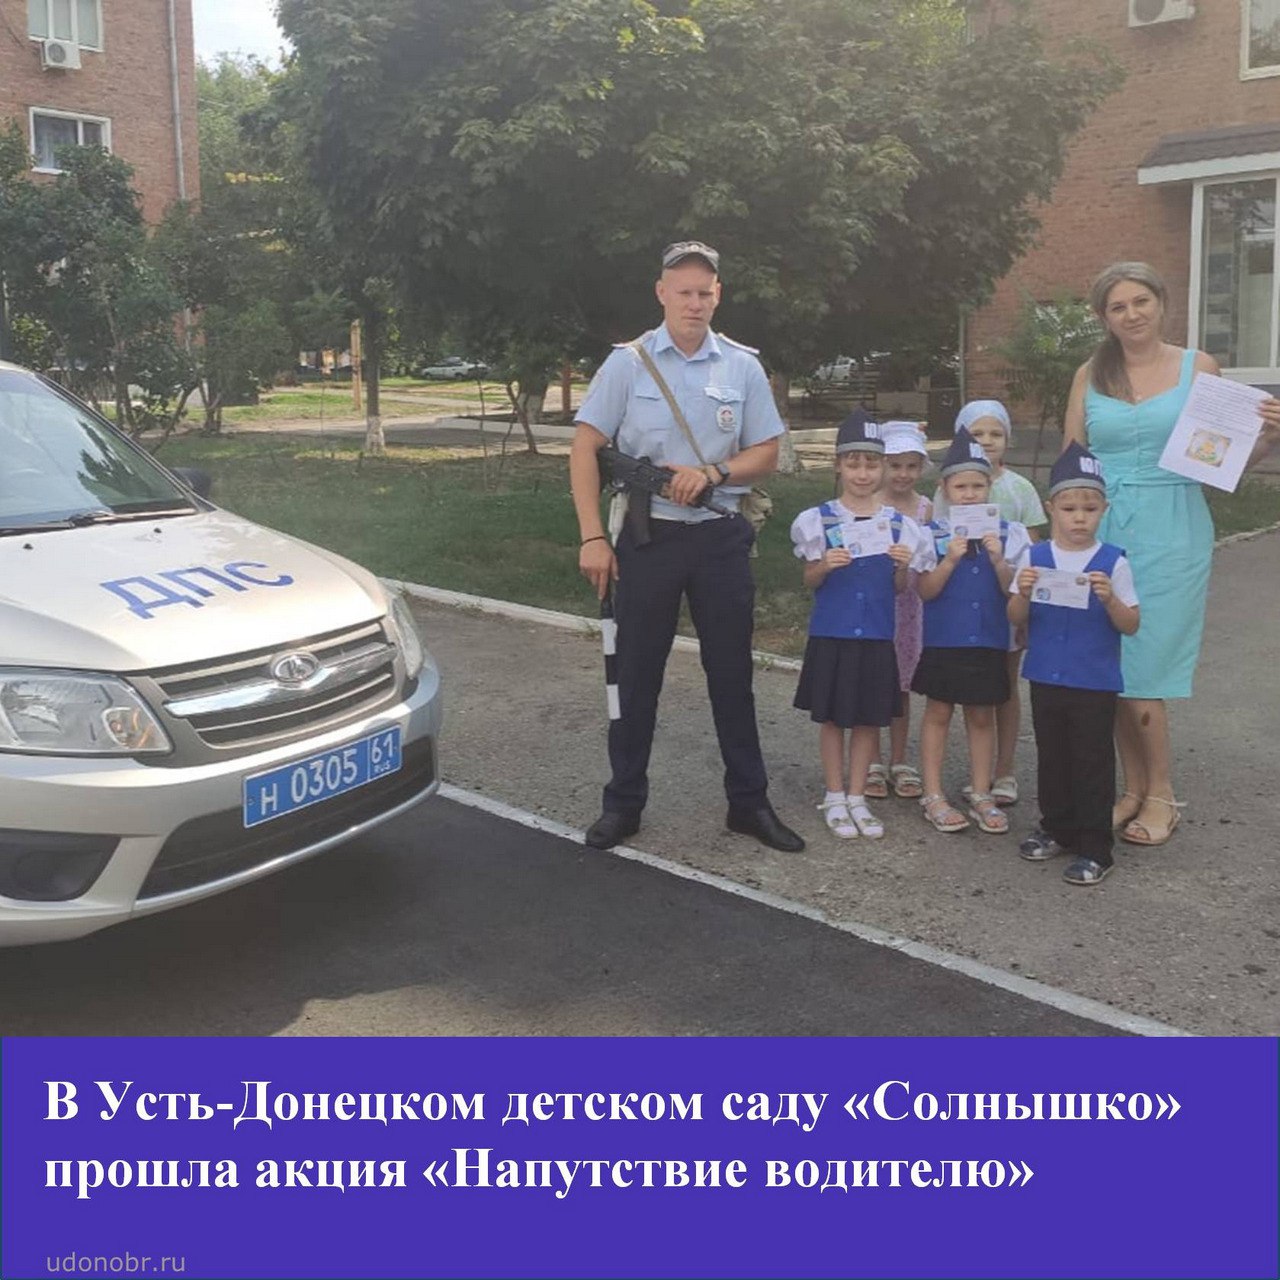 В Усть-Донецком детском саду «Солнышко» прошла акция «Напутствие водителю»